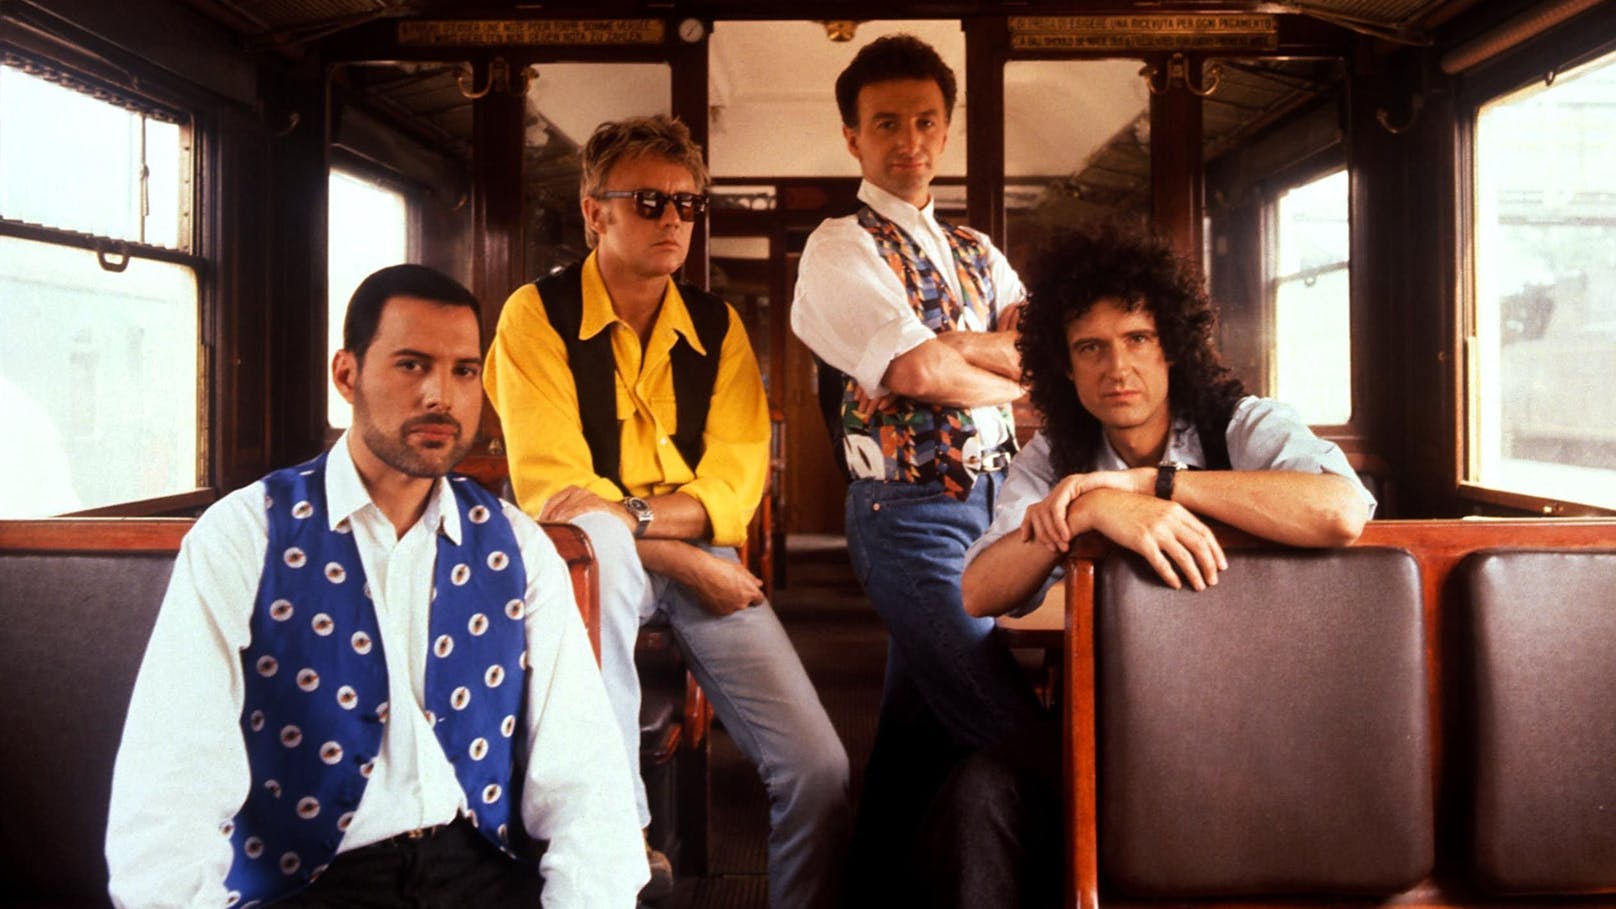 Queen mit Freddie Mercury anno 1989 bei den Aufnahmen zum Video "Breakthru".